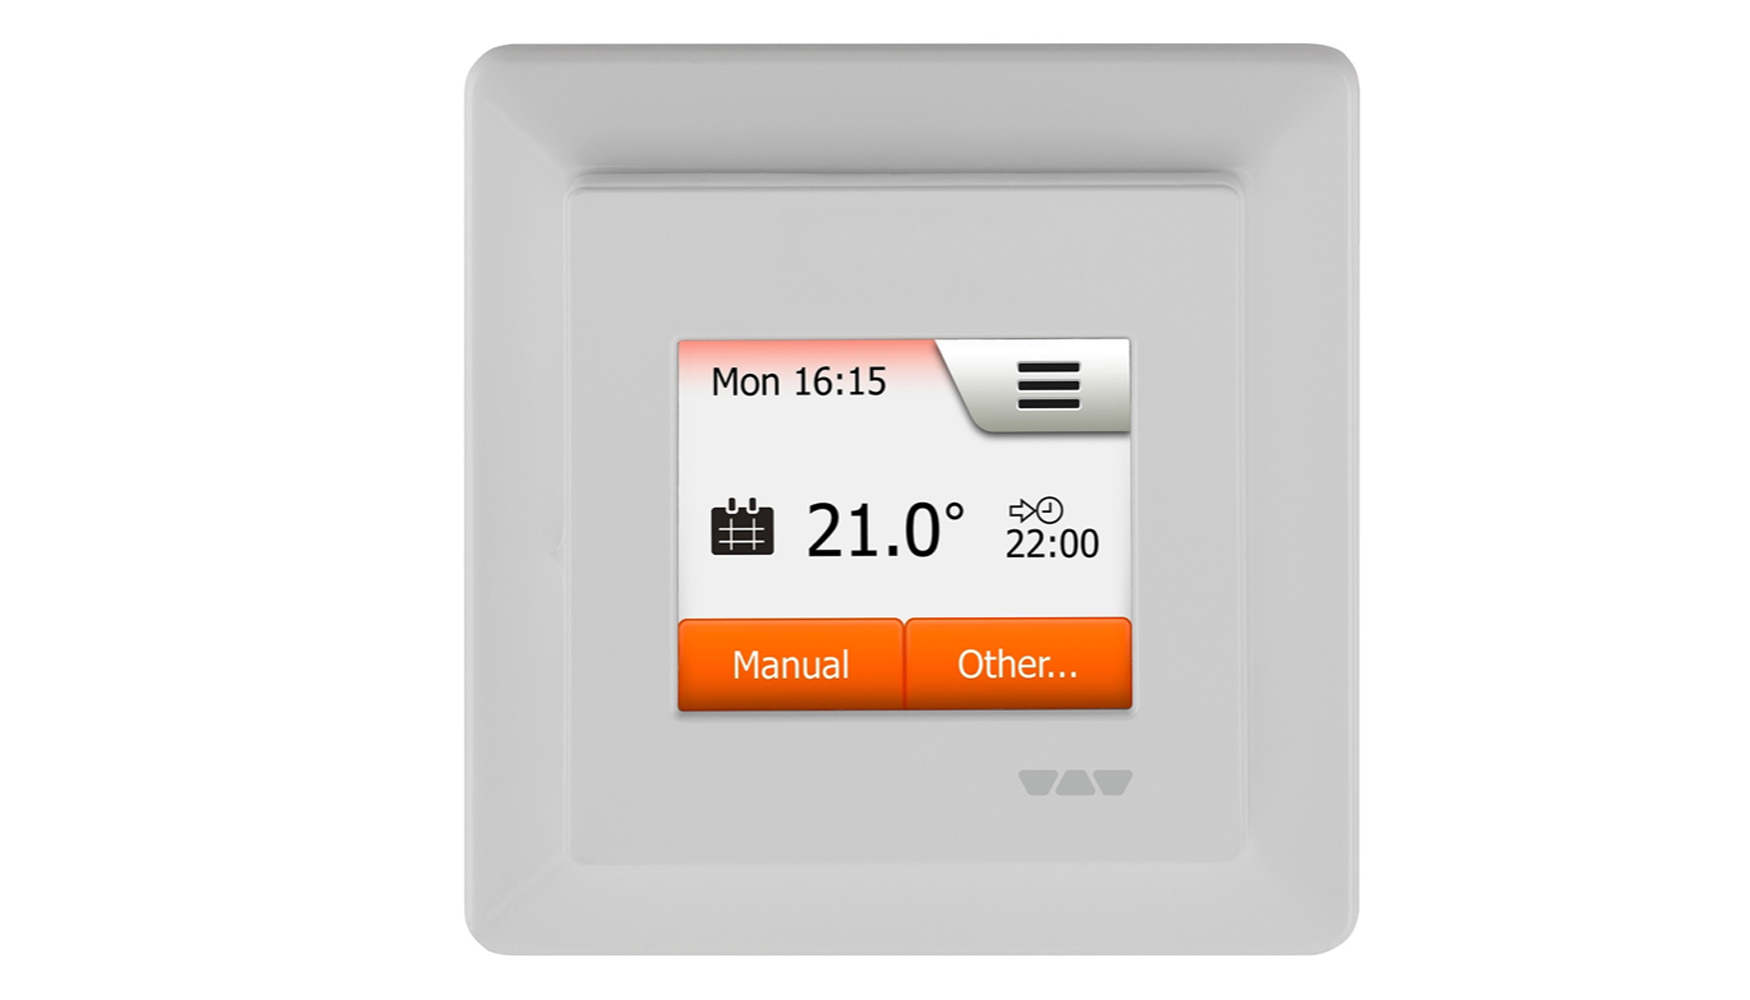 El nuevo y confortable termostato dispone de una pantalla tctil de color